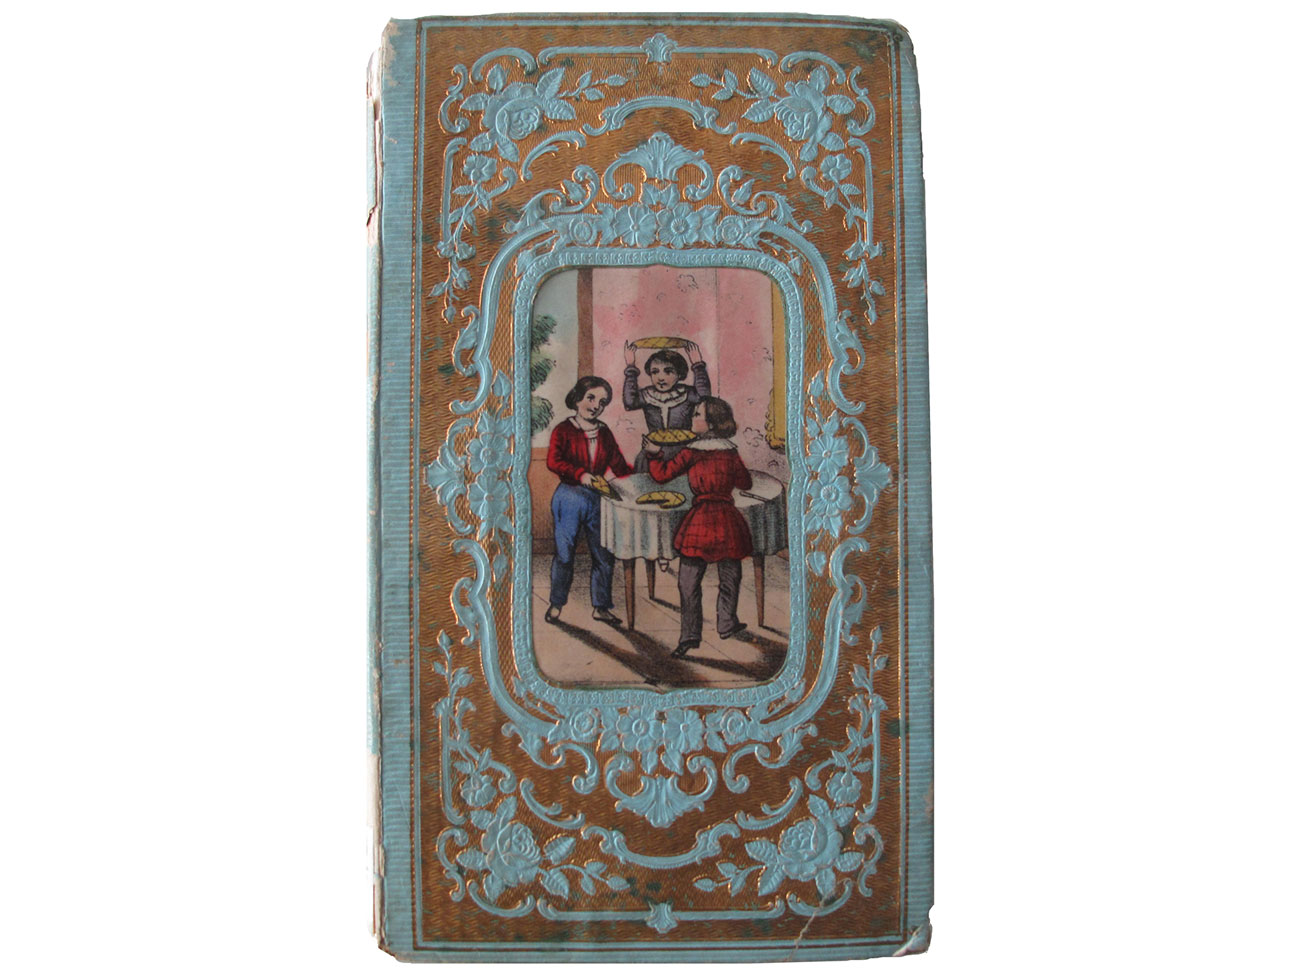 Armand de Solignac, Le Gâteau des rois, souvenirs d'enfance - Limoges Barbou frères, (1872) © Mucem